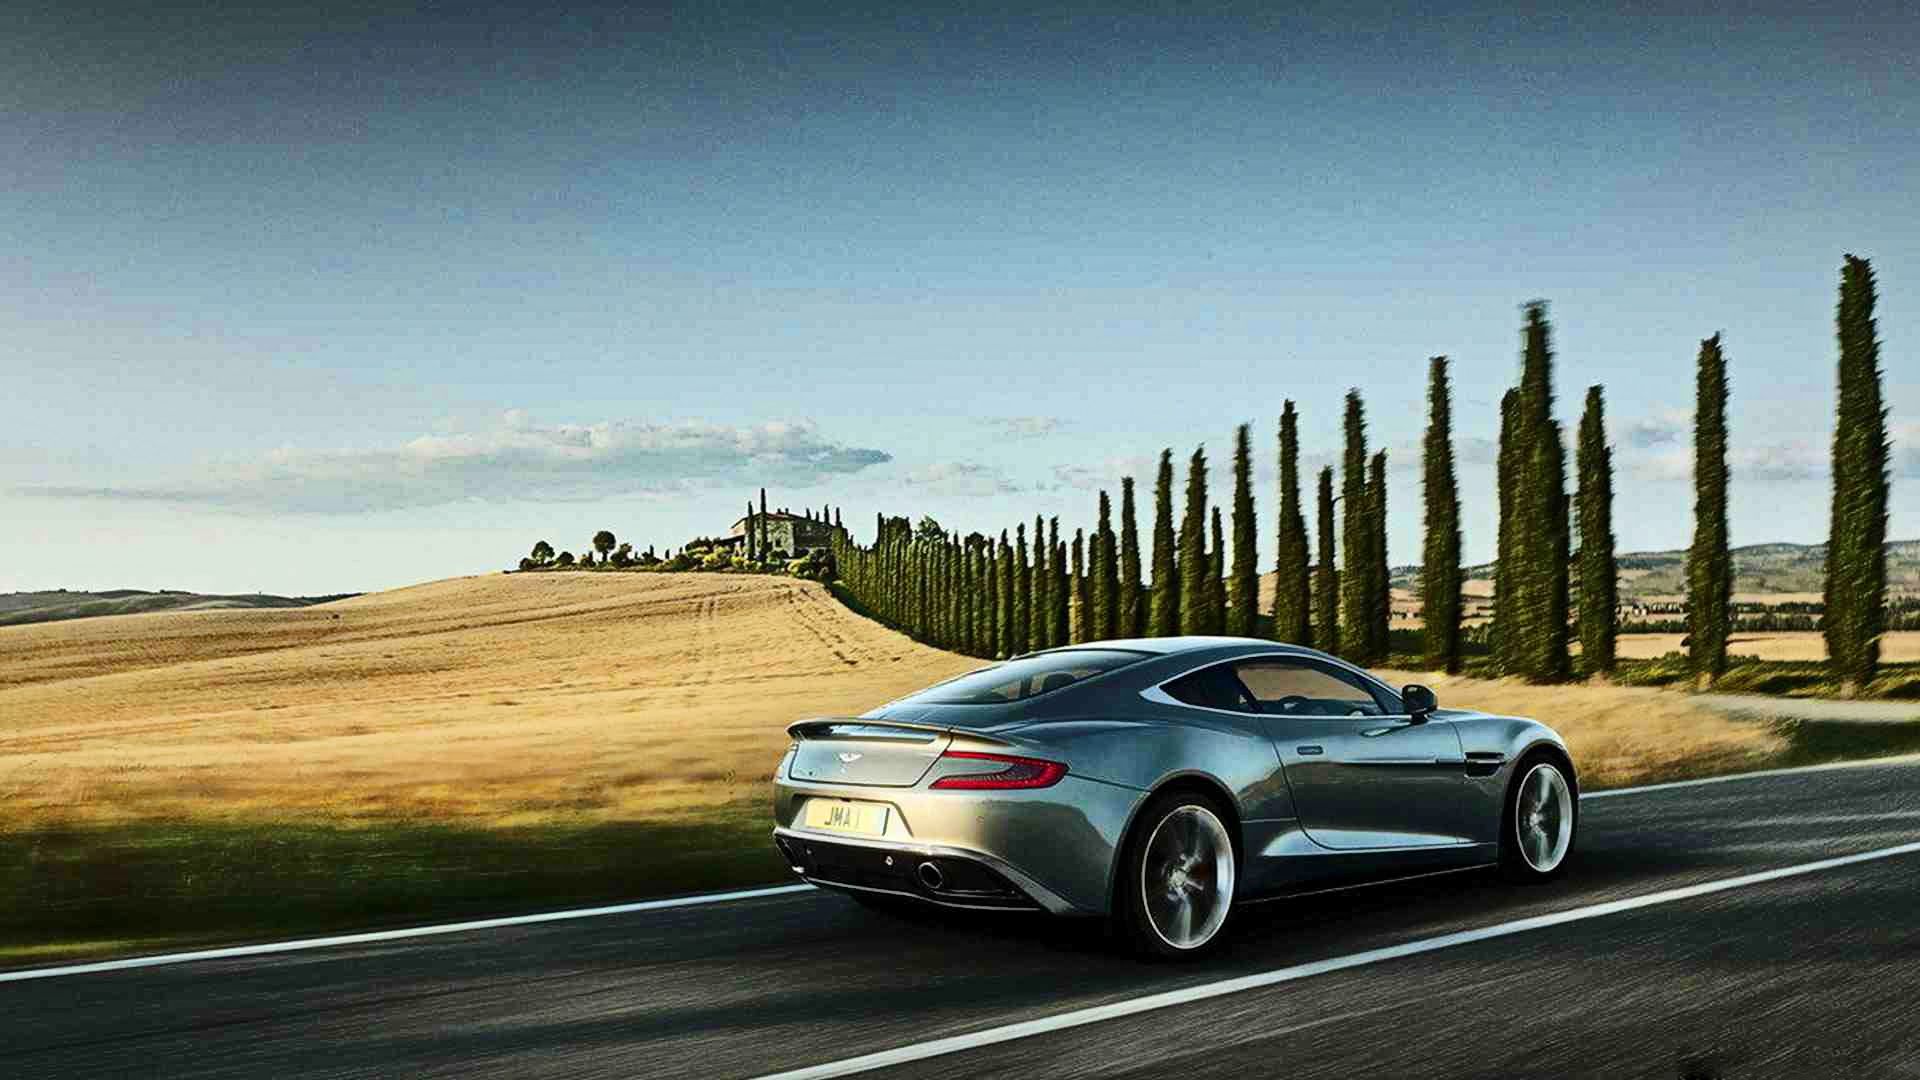 Descarga gratuita Aston Martin Vanquish Wallpaper - Fondo de Escritorio